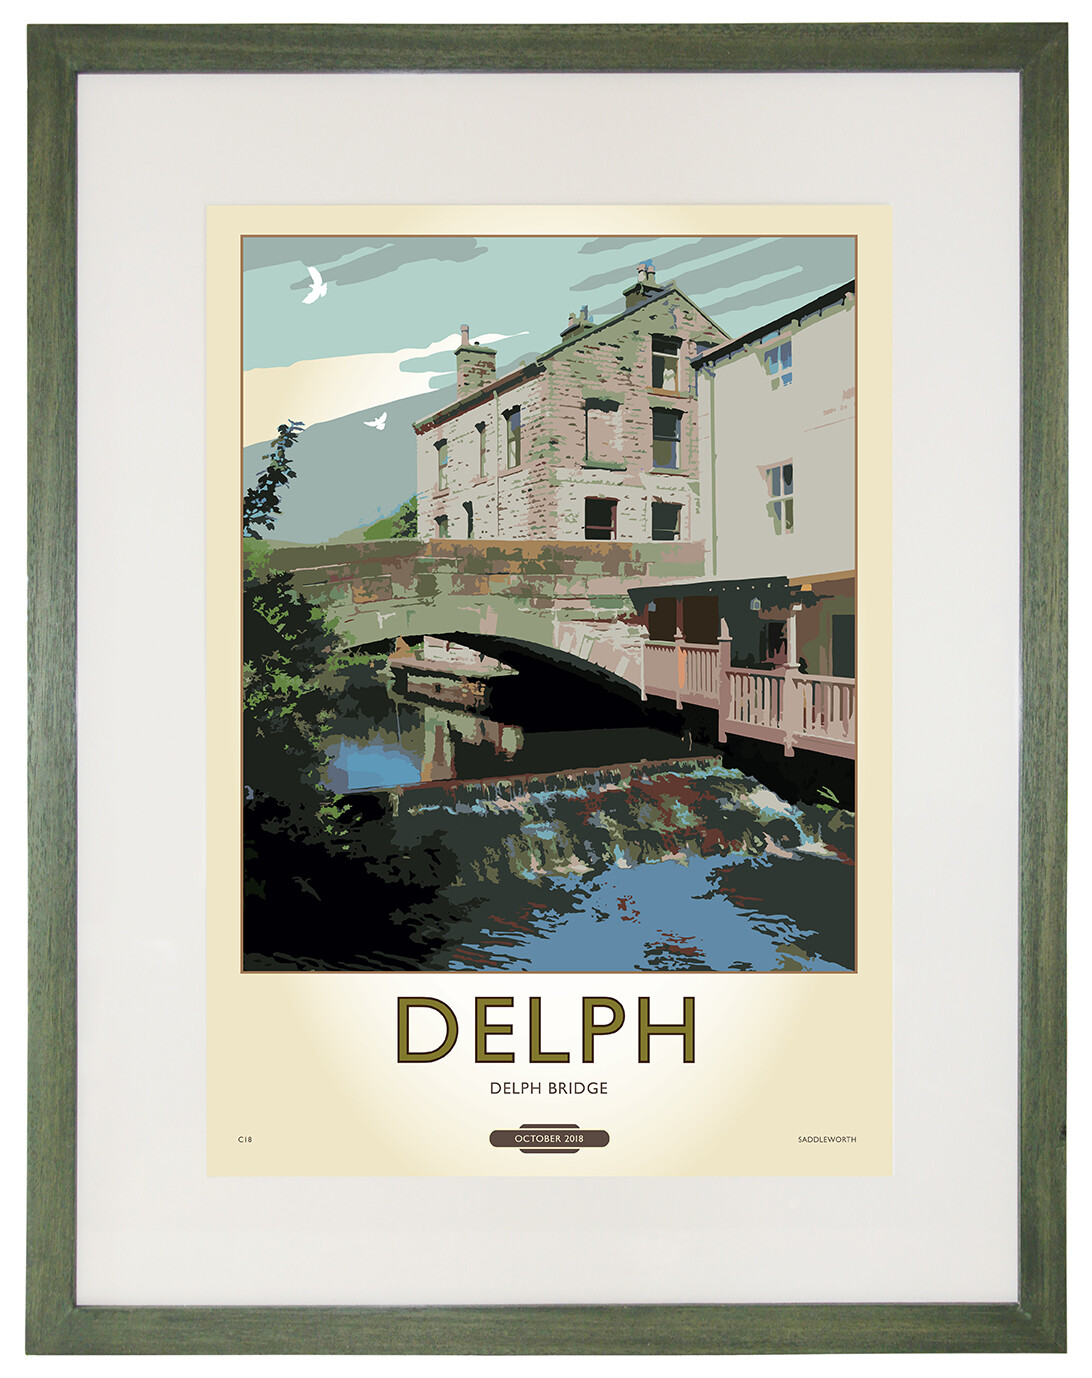 Framed Fine Art Print Saddleworth - Delph